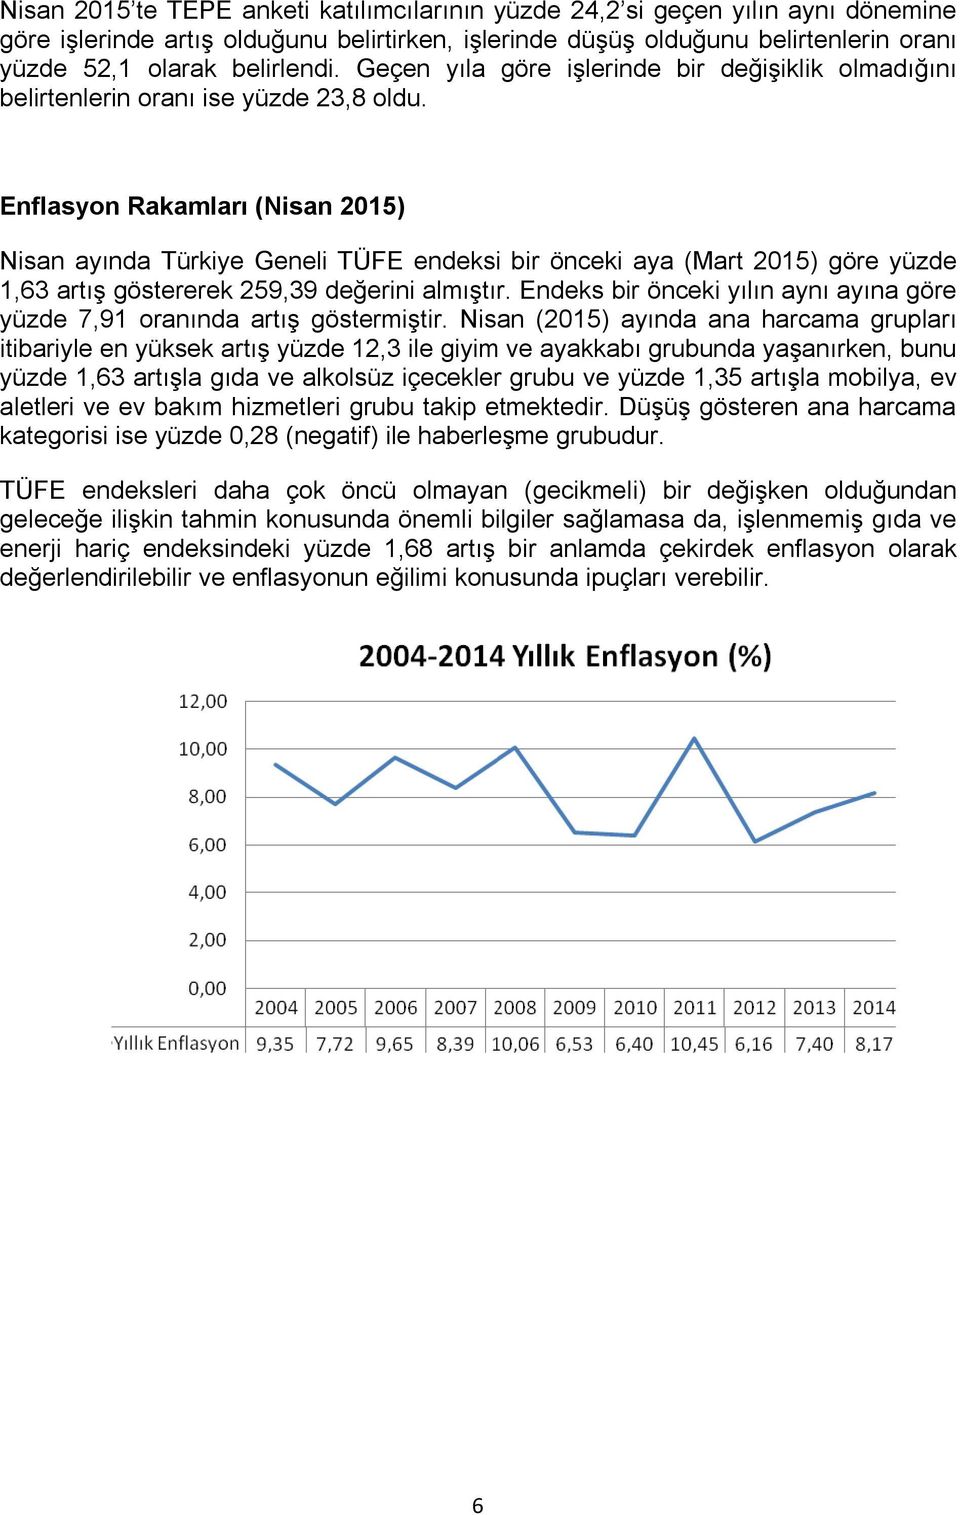 Enflasyon Rakamları (Nisan 2015) Nisan ayında Türkiye Geneli TÜFE endeksi bir önceki aya (Mart 2015) göre yüzde 1,63 artış göstererek 259,39 değerini almıştır.